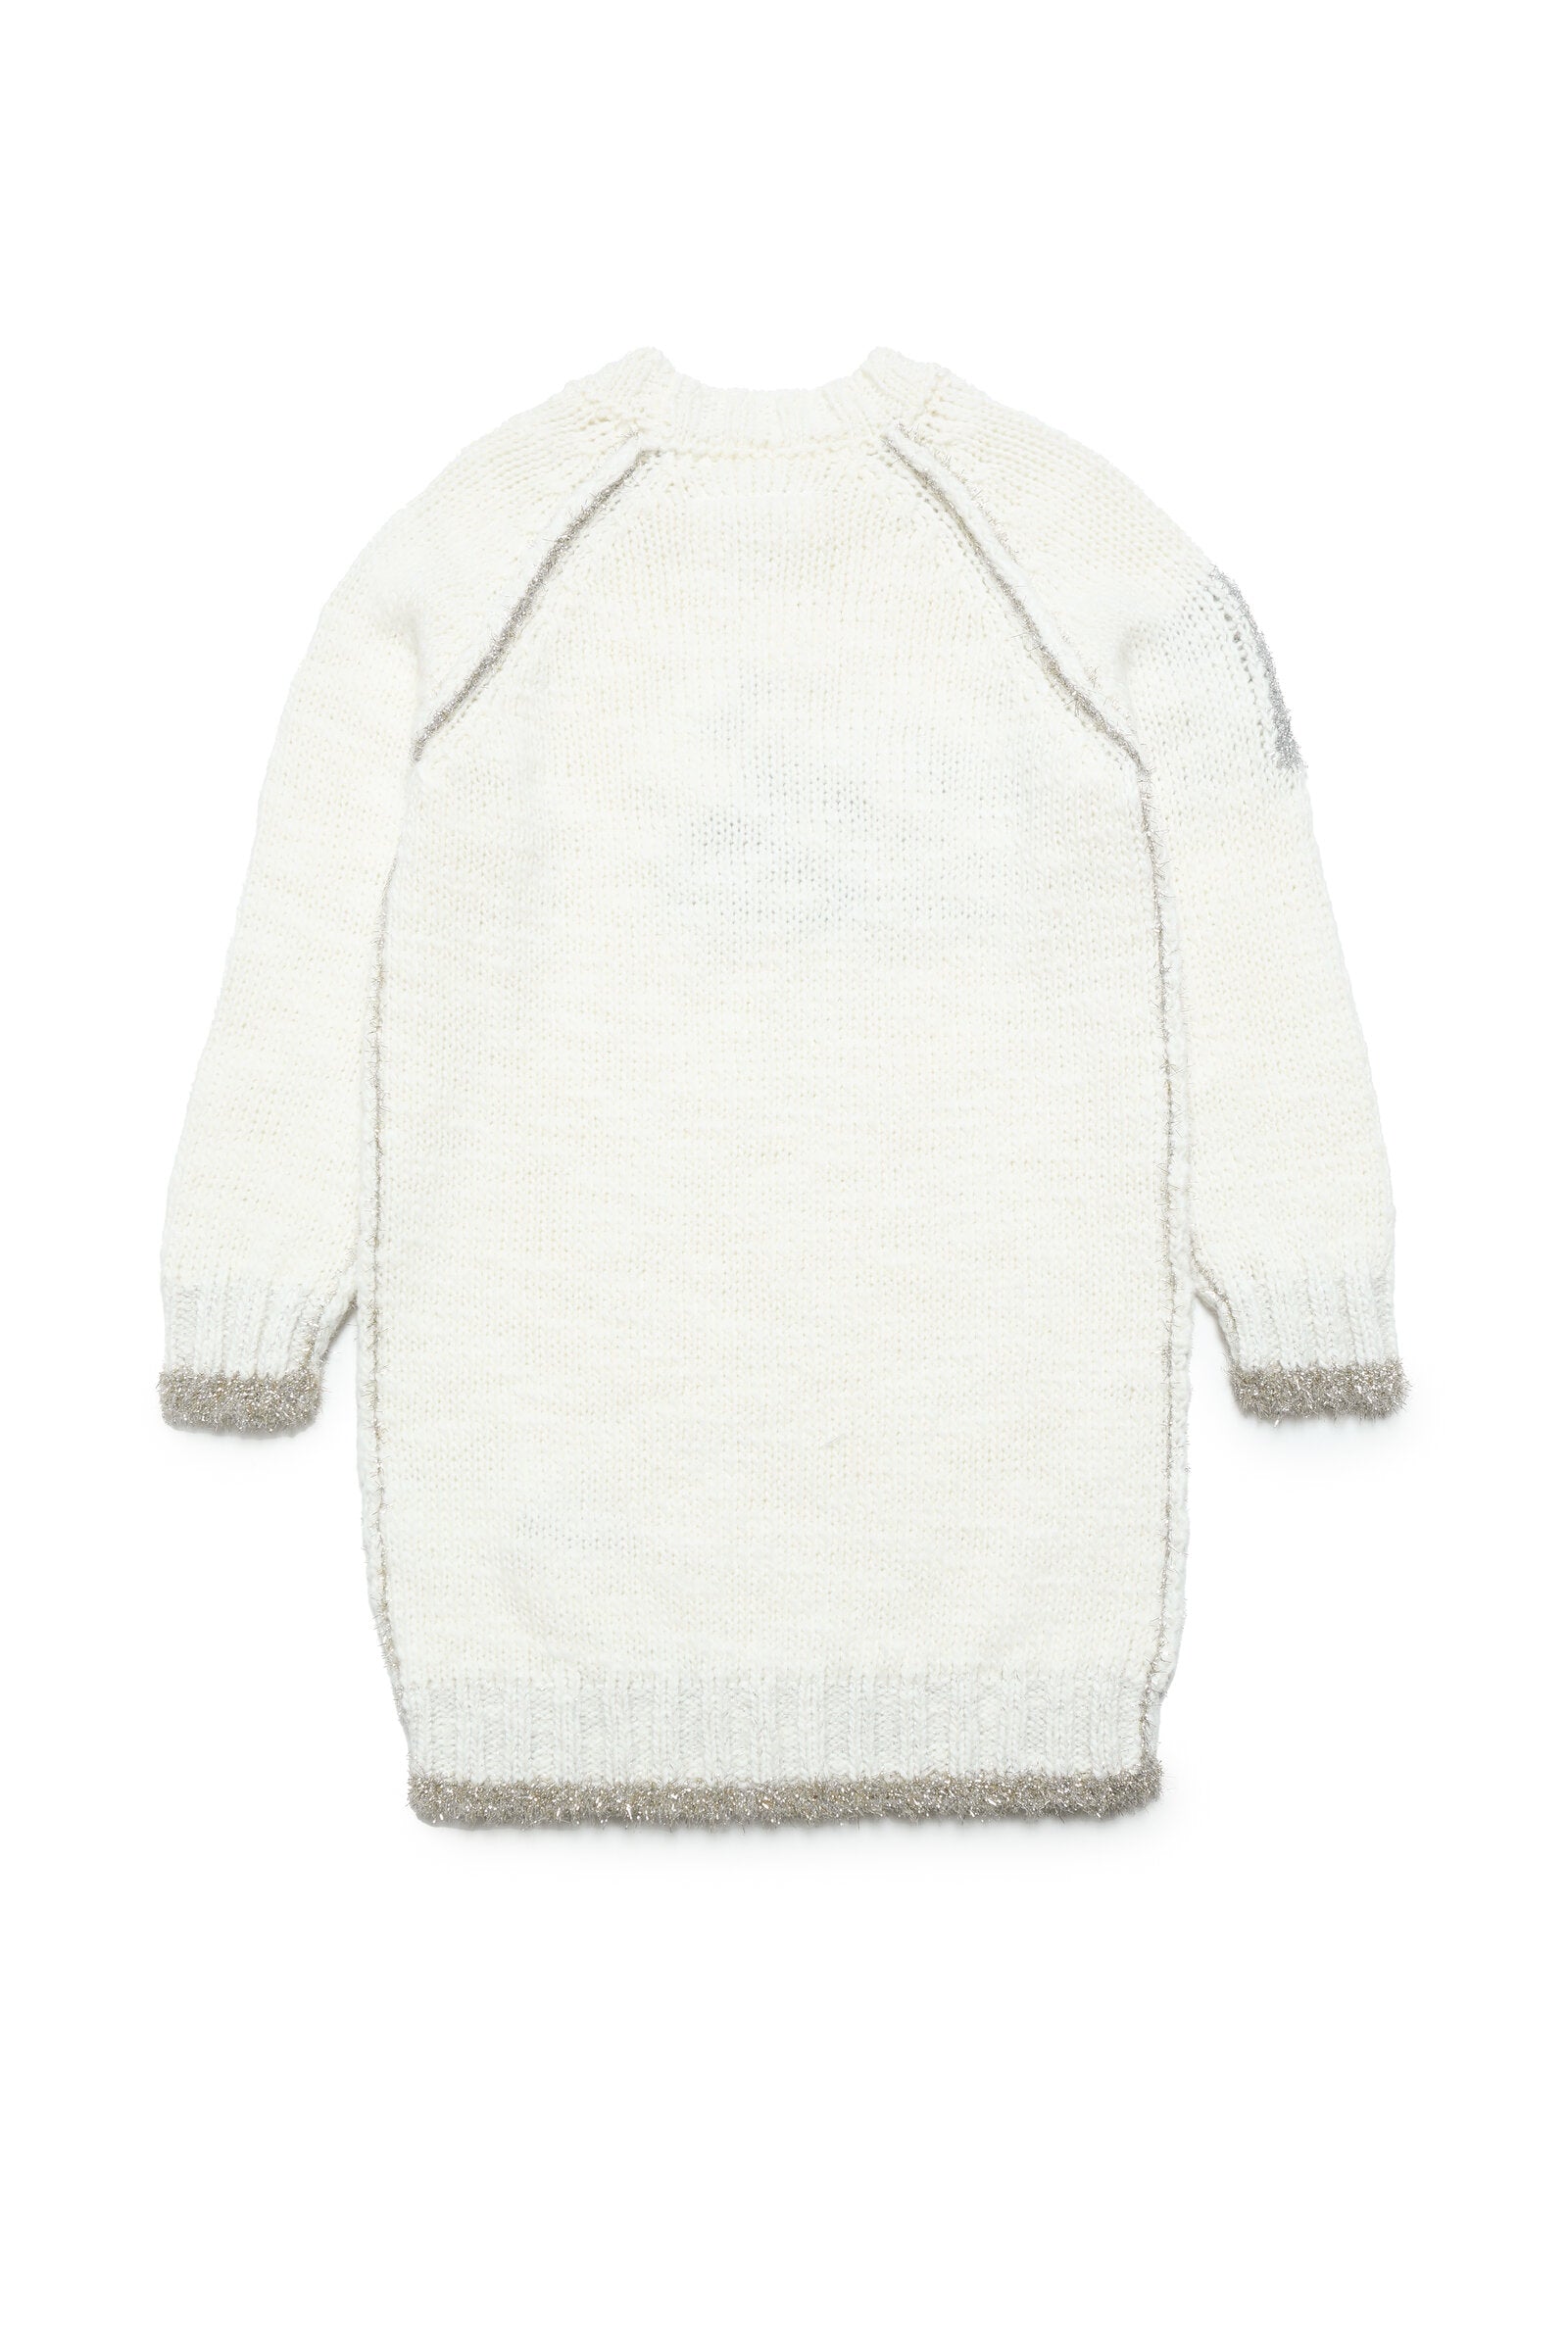 Wool-blend and lurex maxi sweater dress